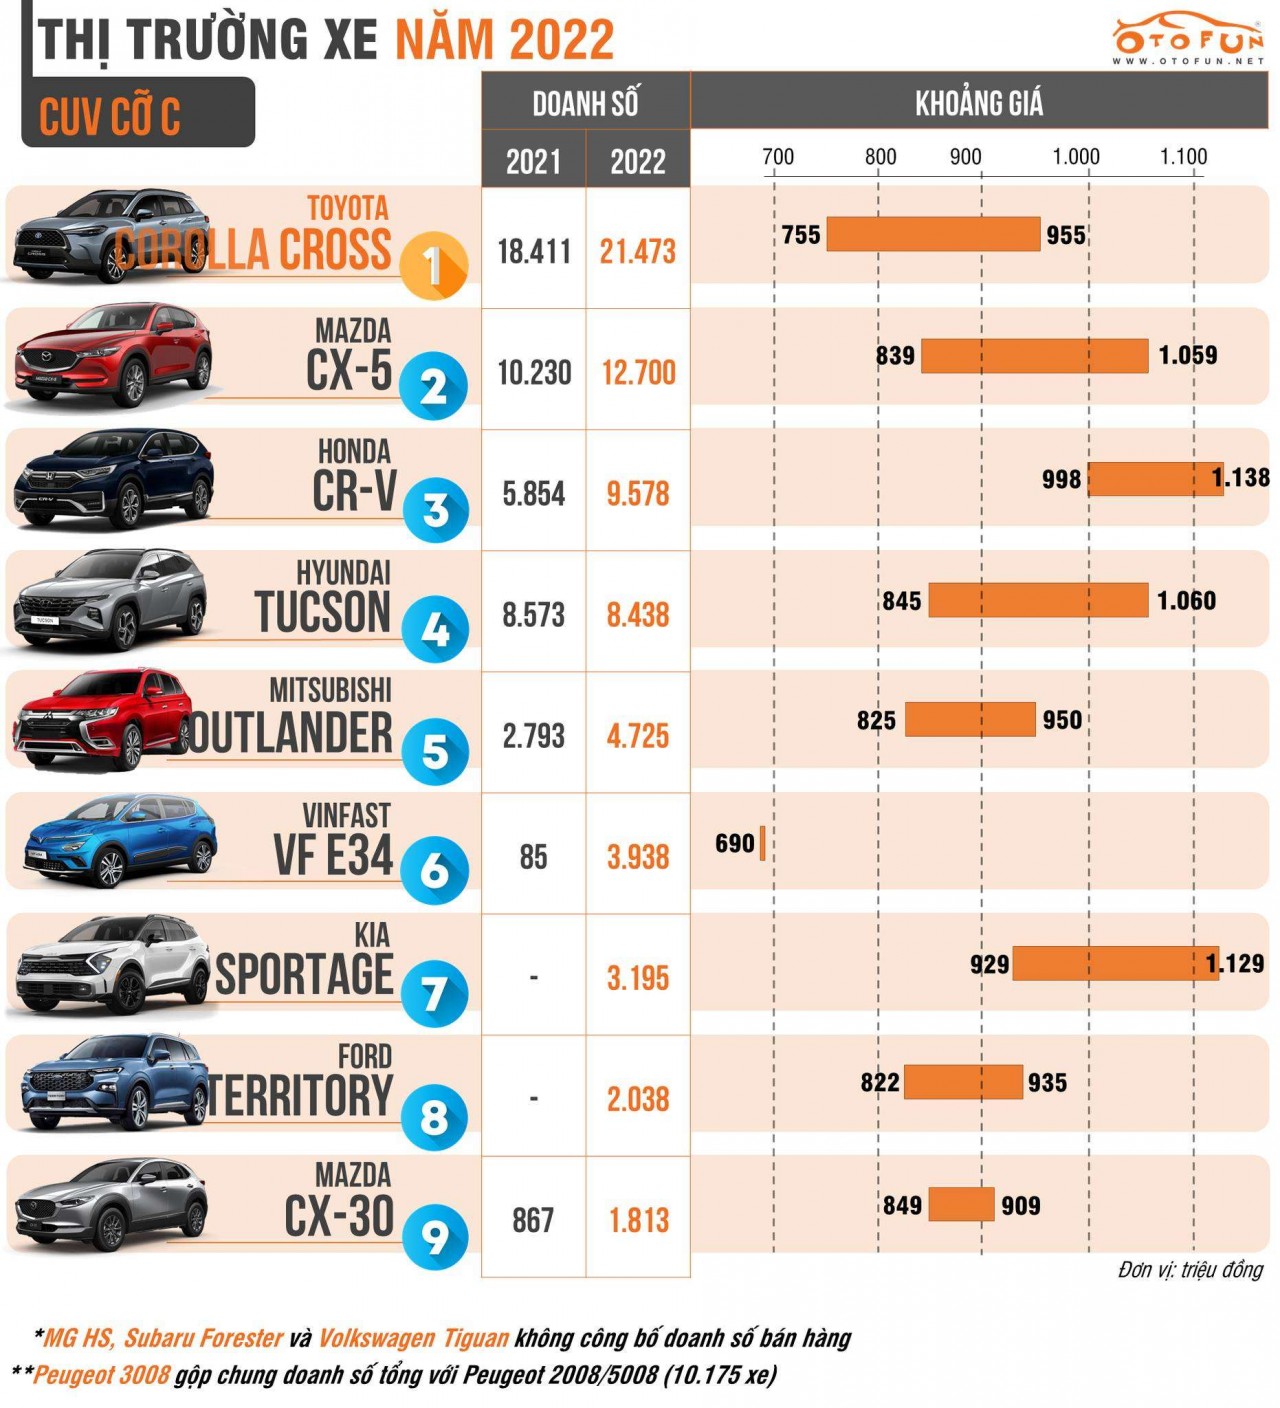 Doanh số Toyota Corolla Cross về nhất phân khúc CUV cỡ C năm thứ 2 liên tiếp